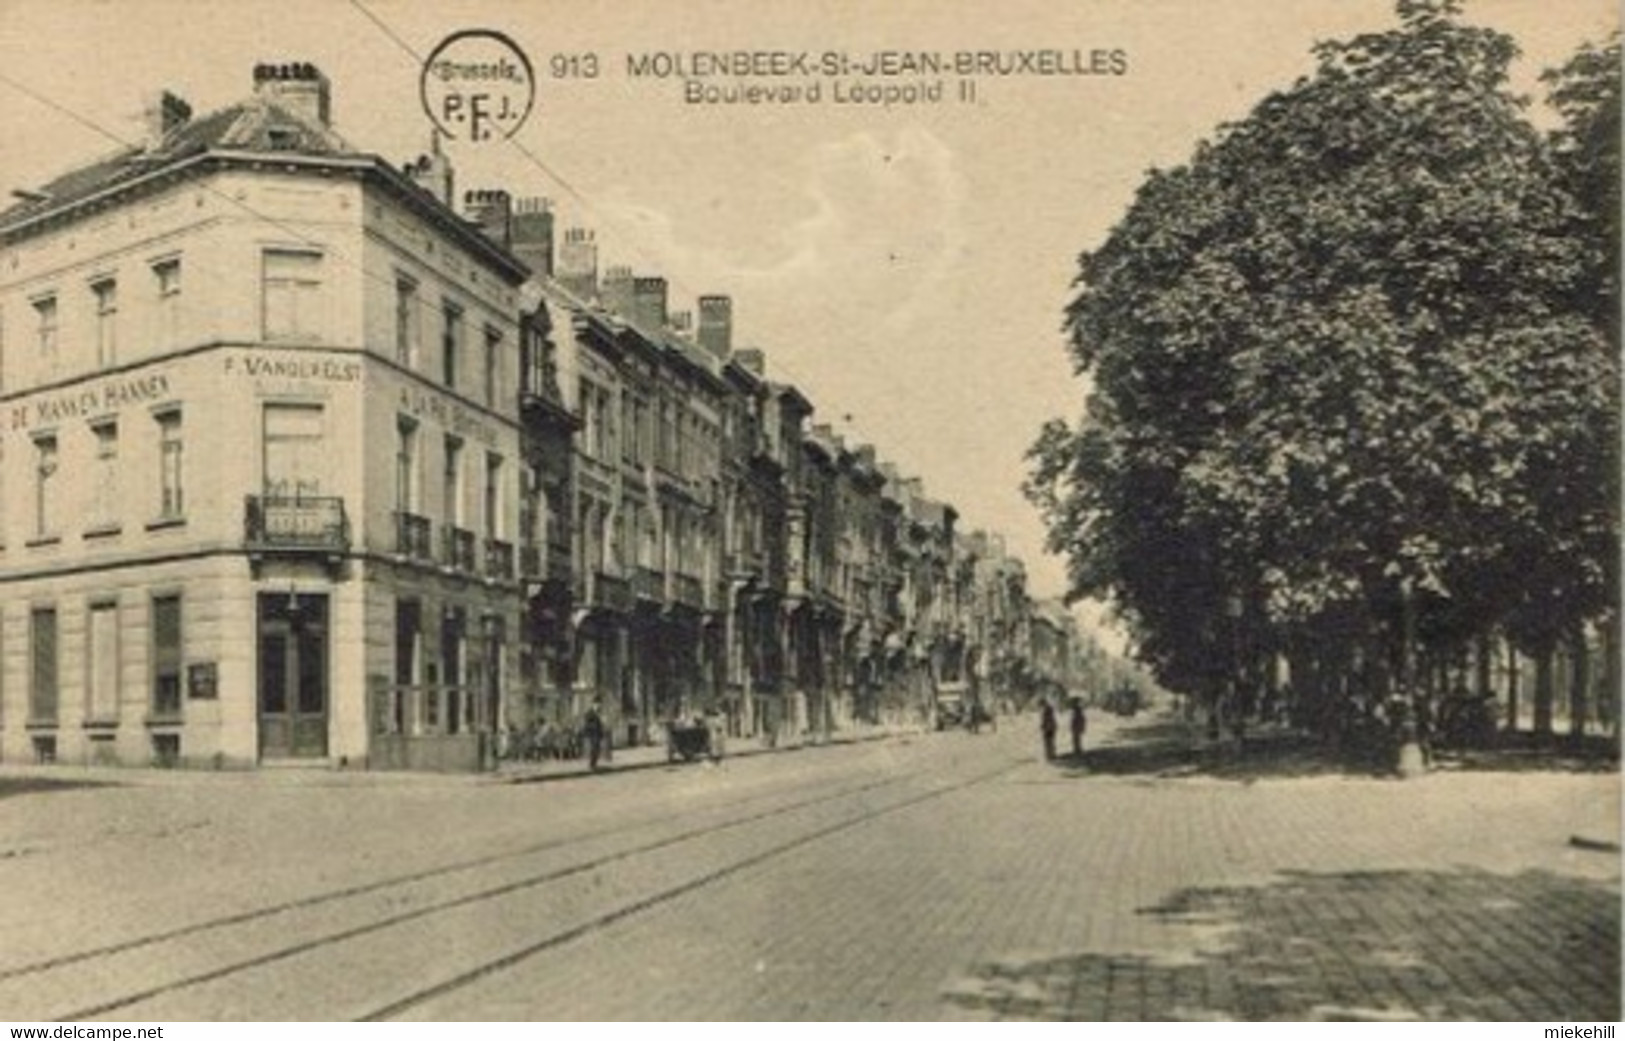 BRUXELLES-MOLENBEEK-BOULEVARD LEOPOLD II-CAFE A LA PIE BOITEUSE-F.VANDERELST - St-Jans-Molenbeek - Molenbeek-St-Jean